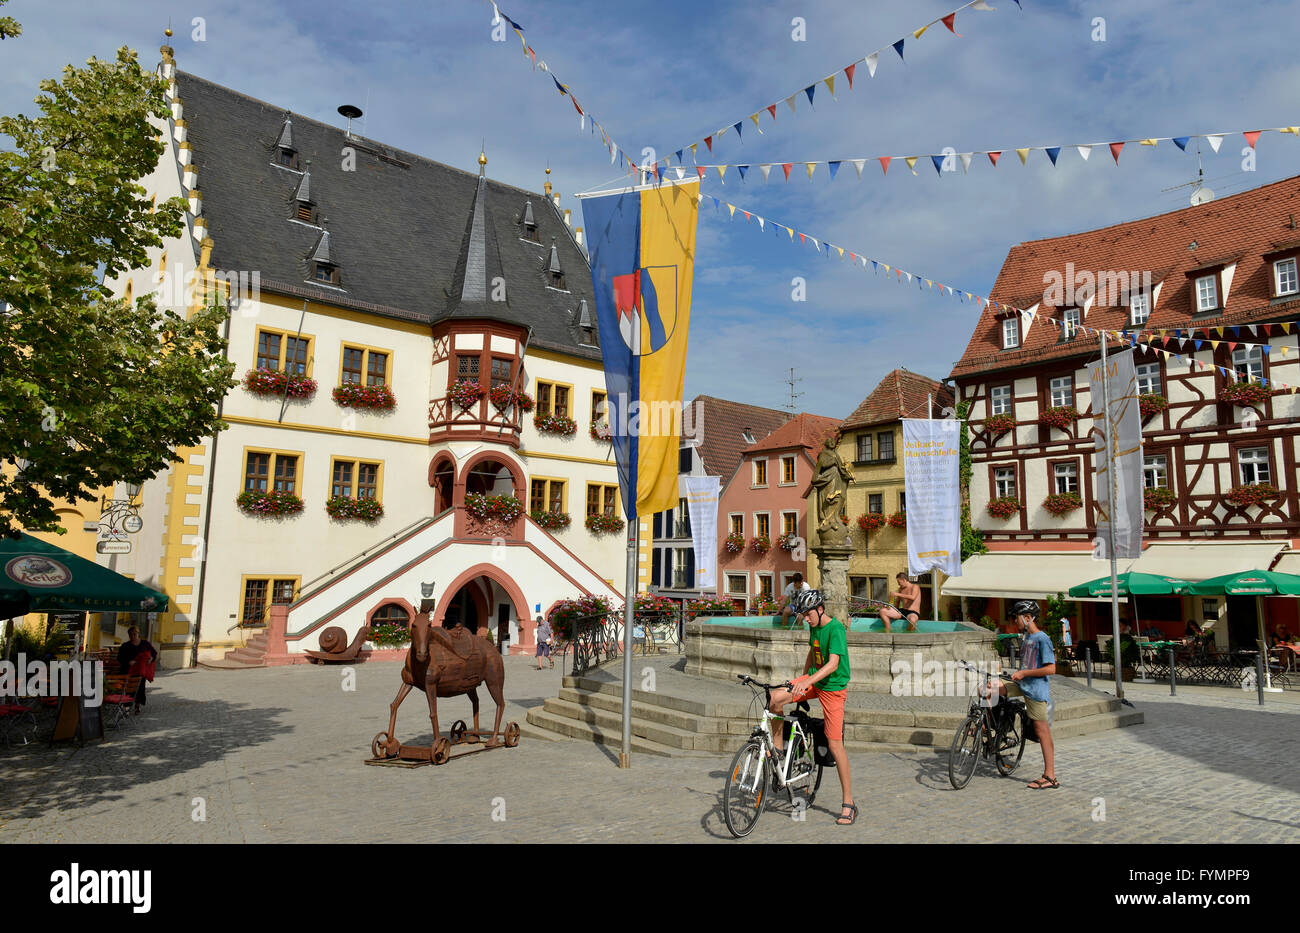 Marktplatz, Volkach, Bayern, Deutschland Foto Stock